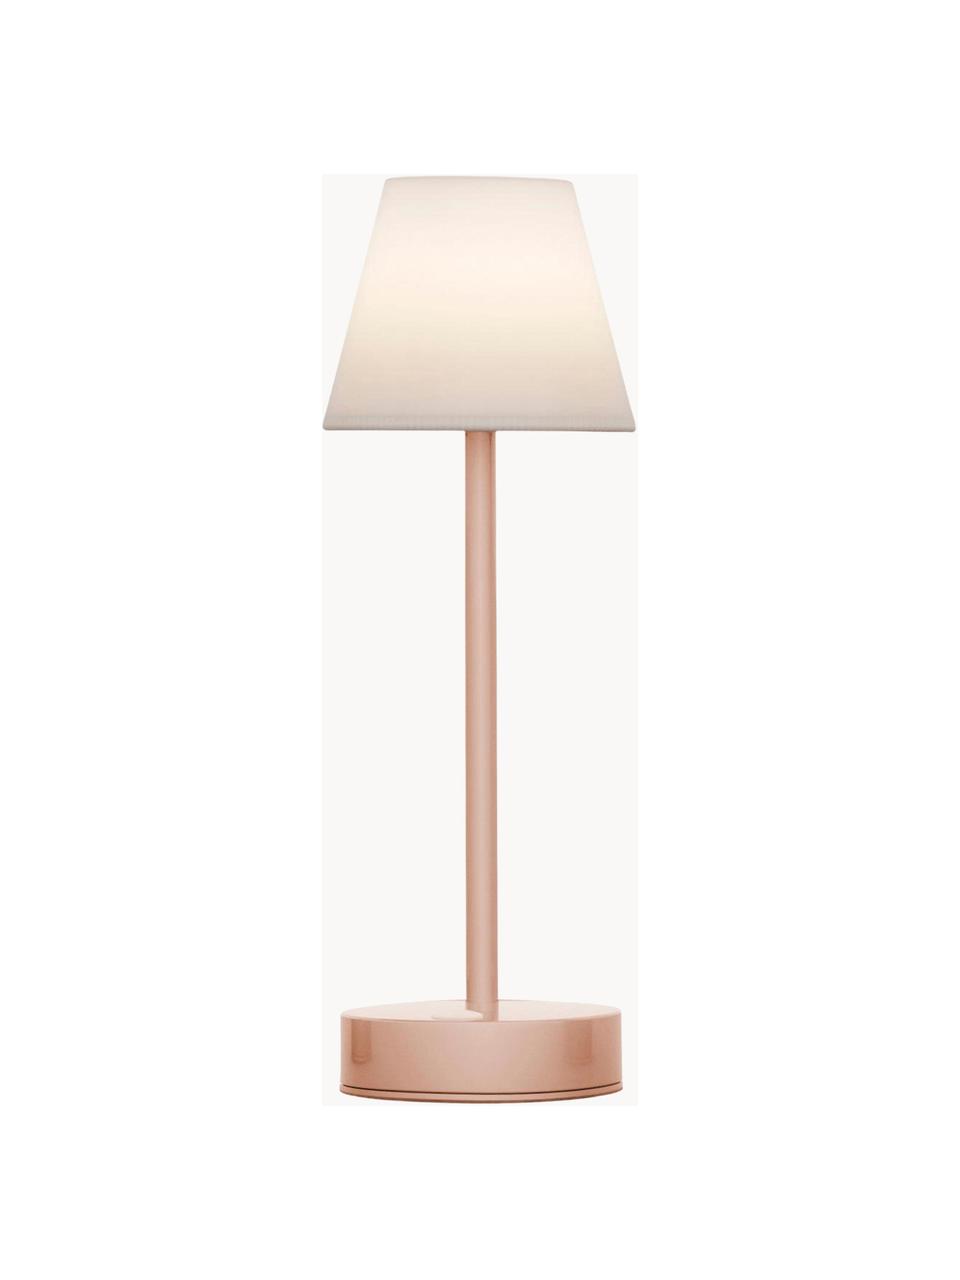 Mobiele dimbare LED outdoor tafellamp Lola met touchfunctie, Lampenkap: polypropyleen, Lampvoet: gecoat metaal, Wit, roze, Ø 11 x H 32 cm